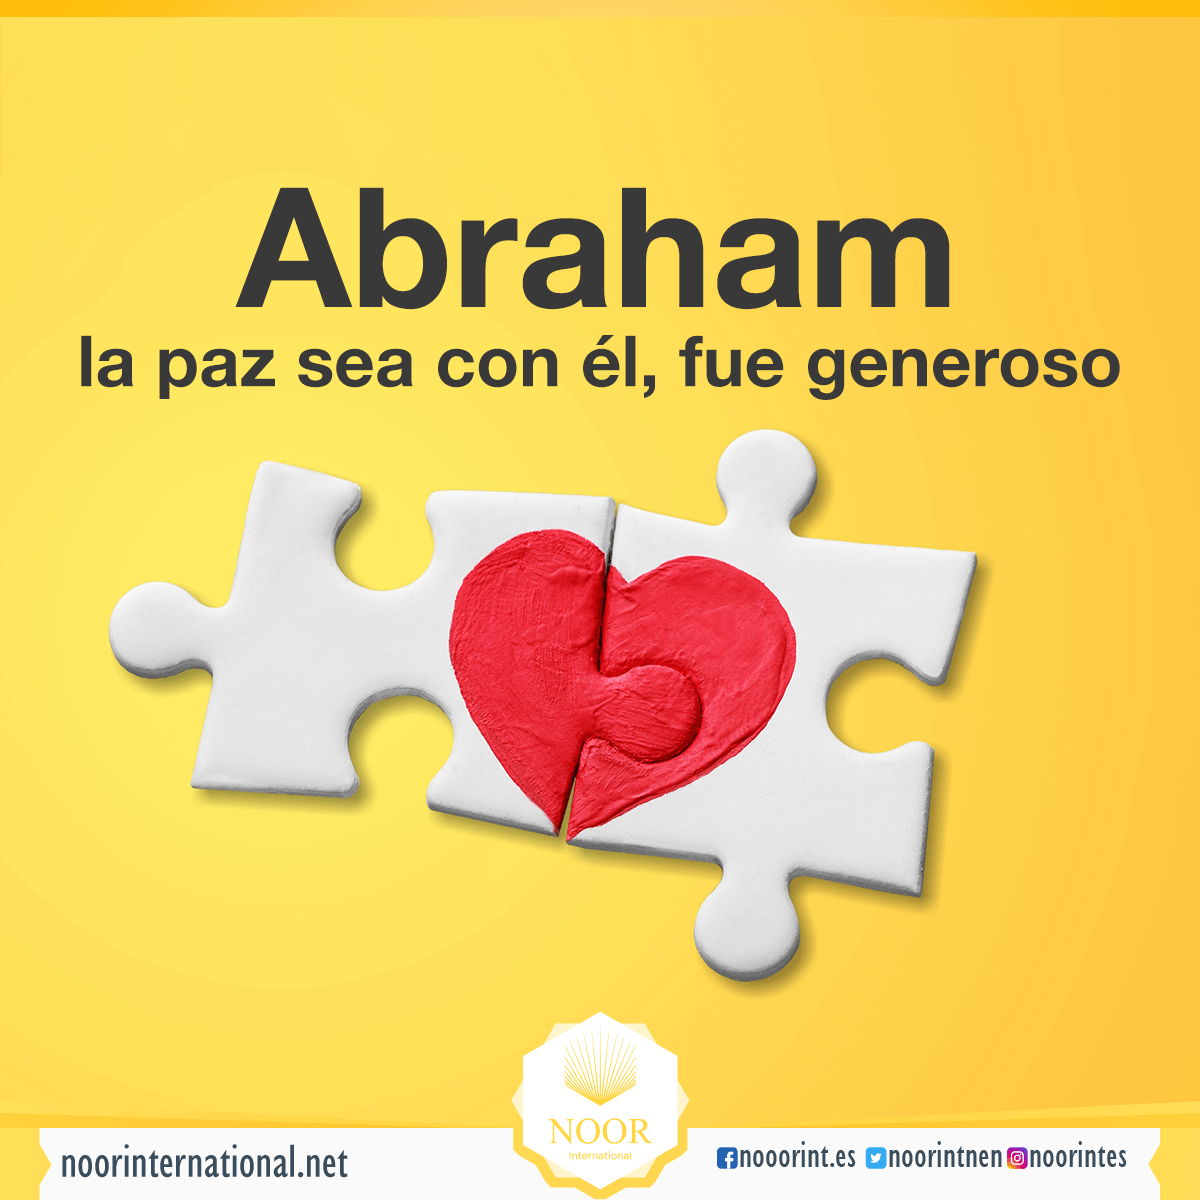 Abraham, la paz sea con él, fue generoso